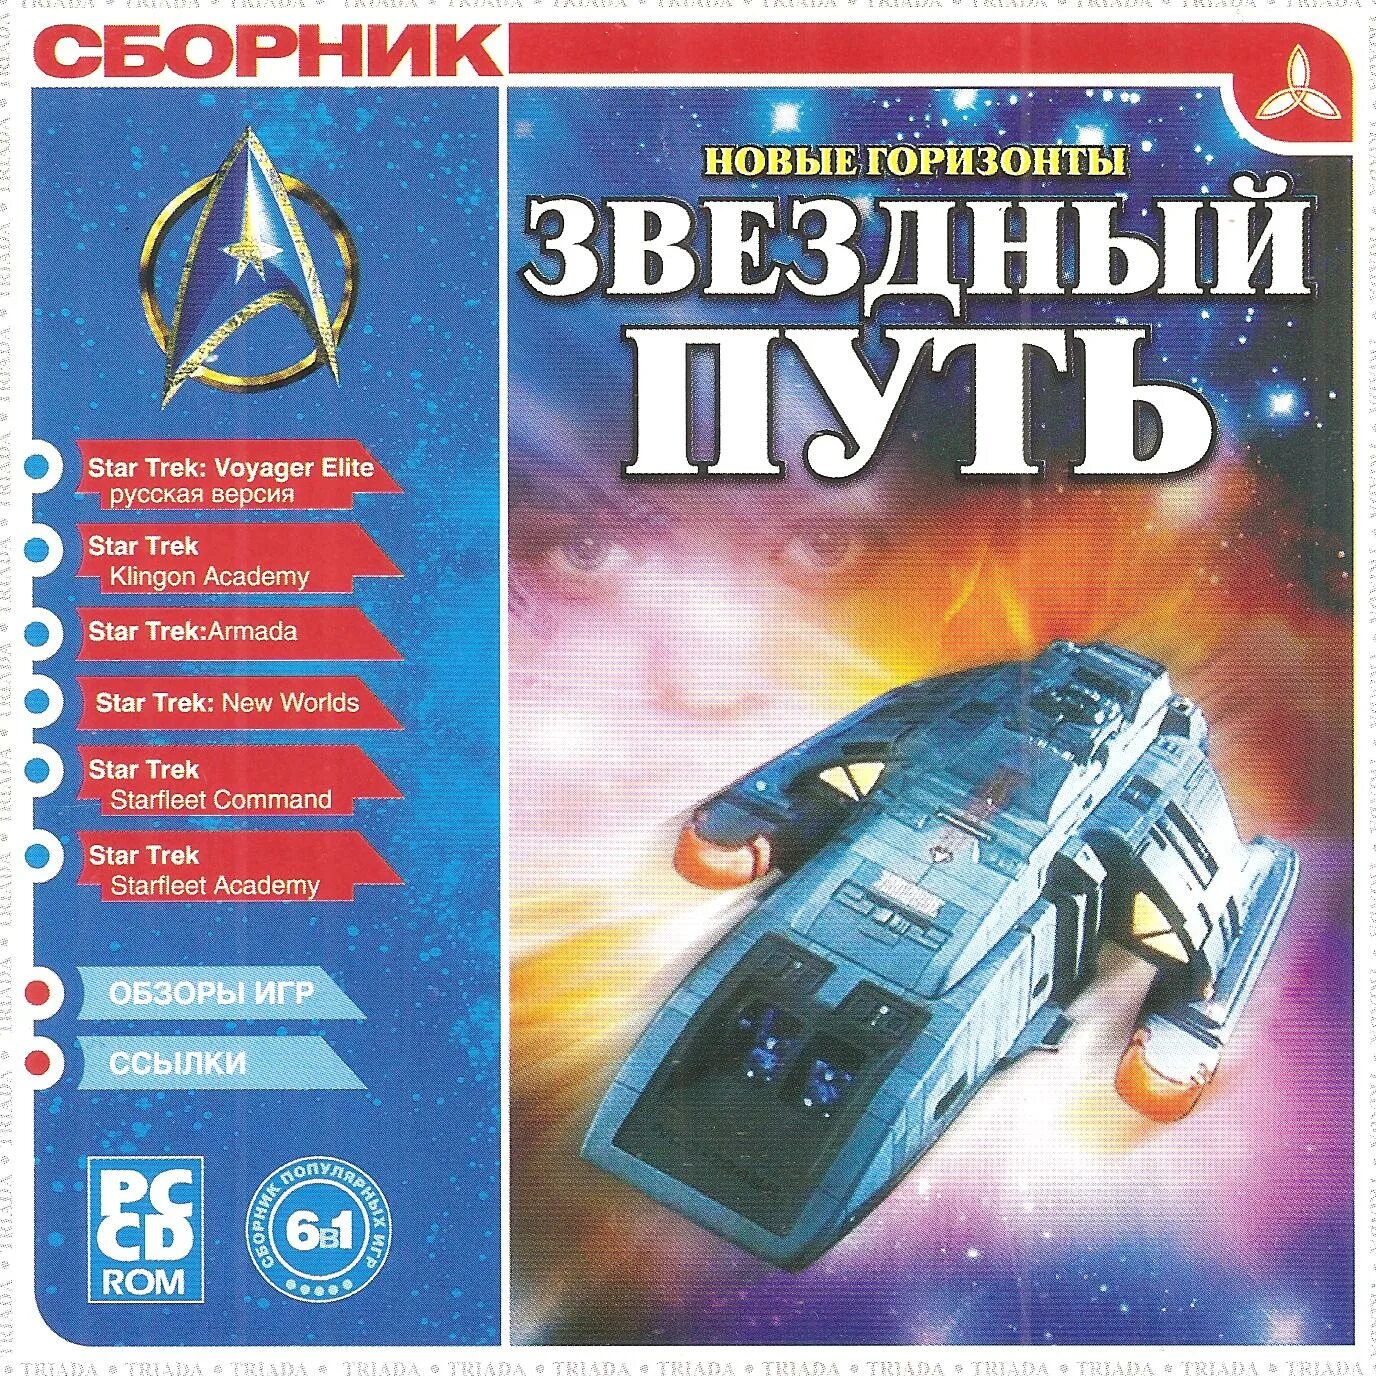 Triada сборник игр. Star Trek диск игра. Сборники детских игр от Триада. Сборник Звёздный 4 класс. Звездный диск